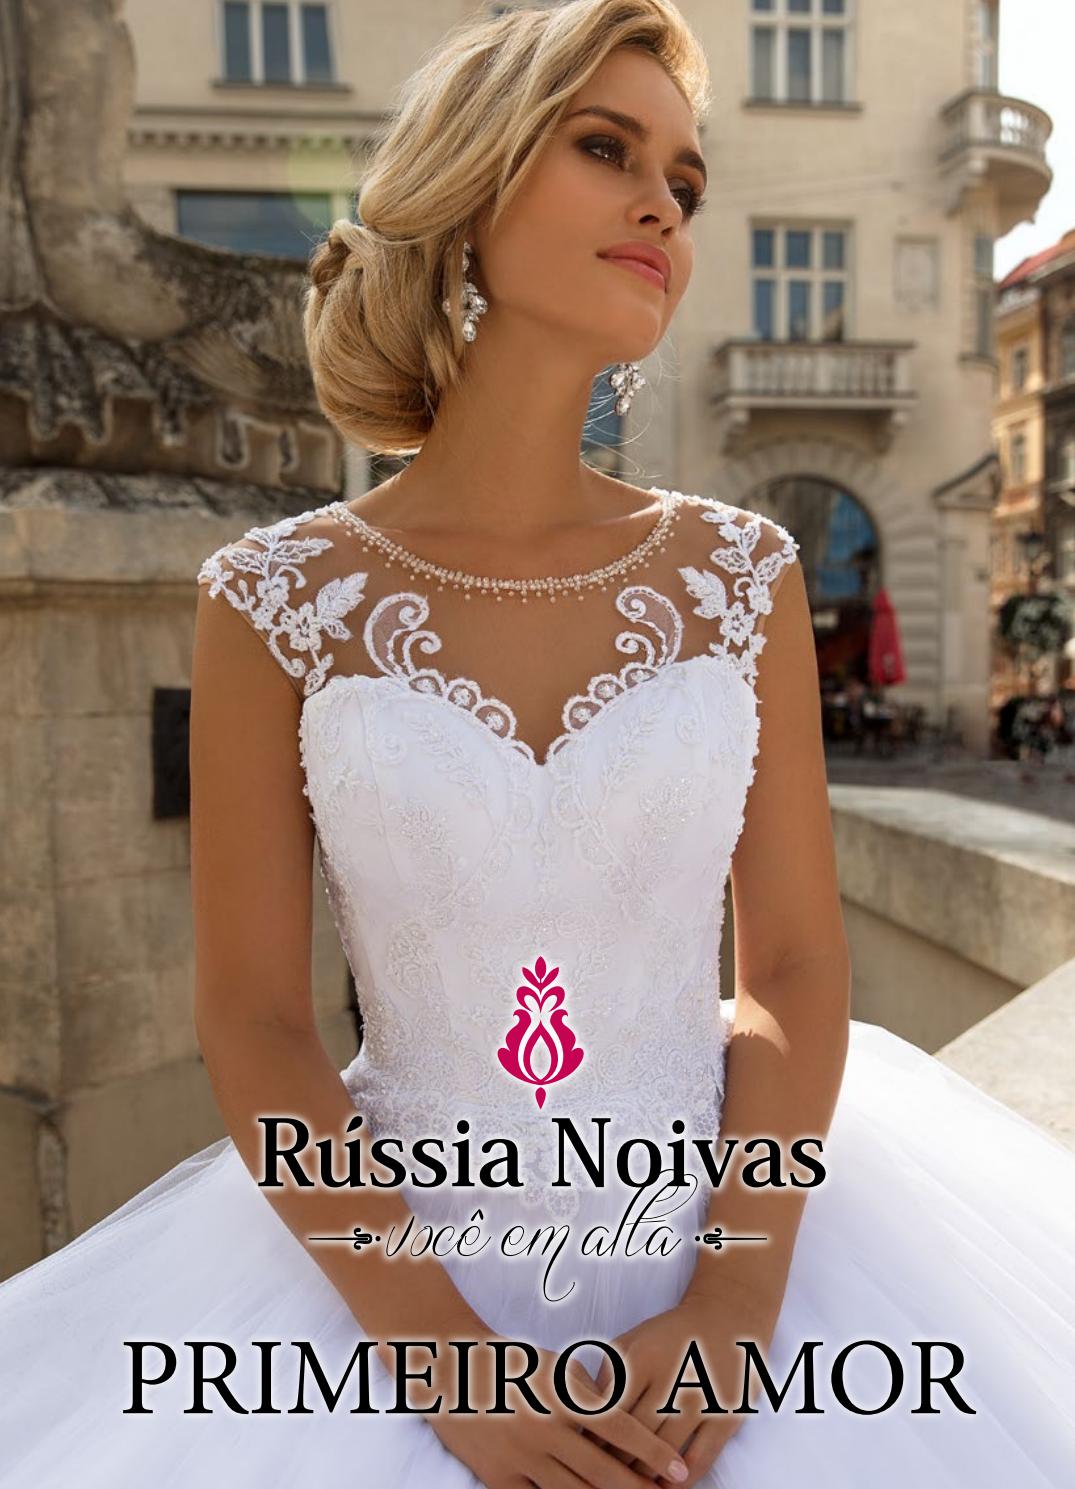 俄罗斯婚纱礼服设计画册/素材/书籍/目录/杂志/婚纱礼服设计品牌有哪些/Russia Noivas2019